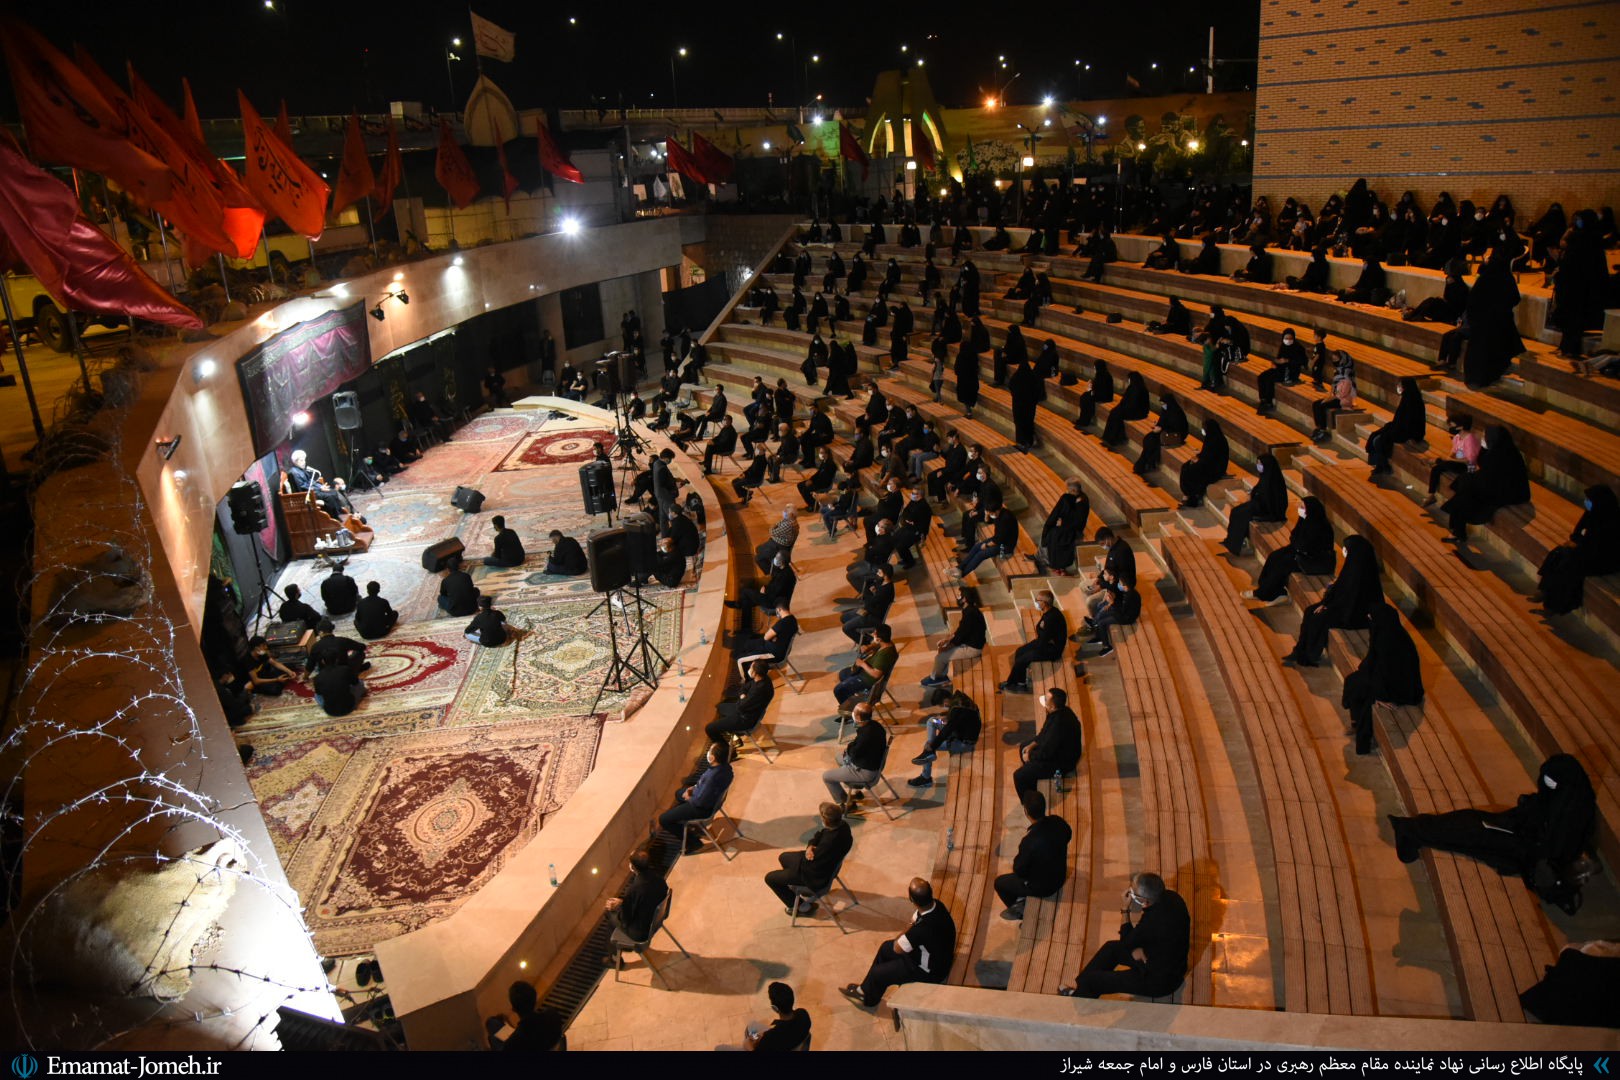 مراسم سوگواری و عزاداری شب تاسوعای حسینی با سخنرانی آیت الله دژکام در مرکز حفظ آثار و نشر ارزش های دفاع مقدس